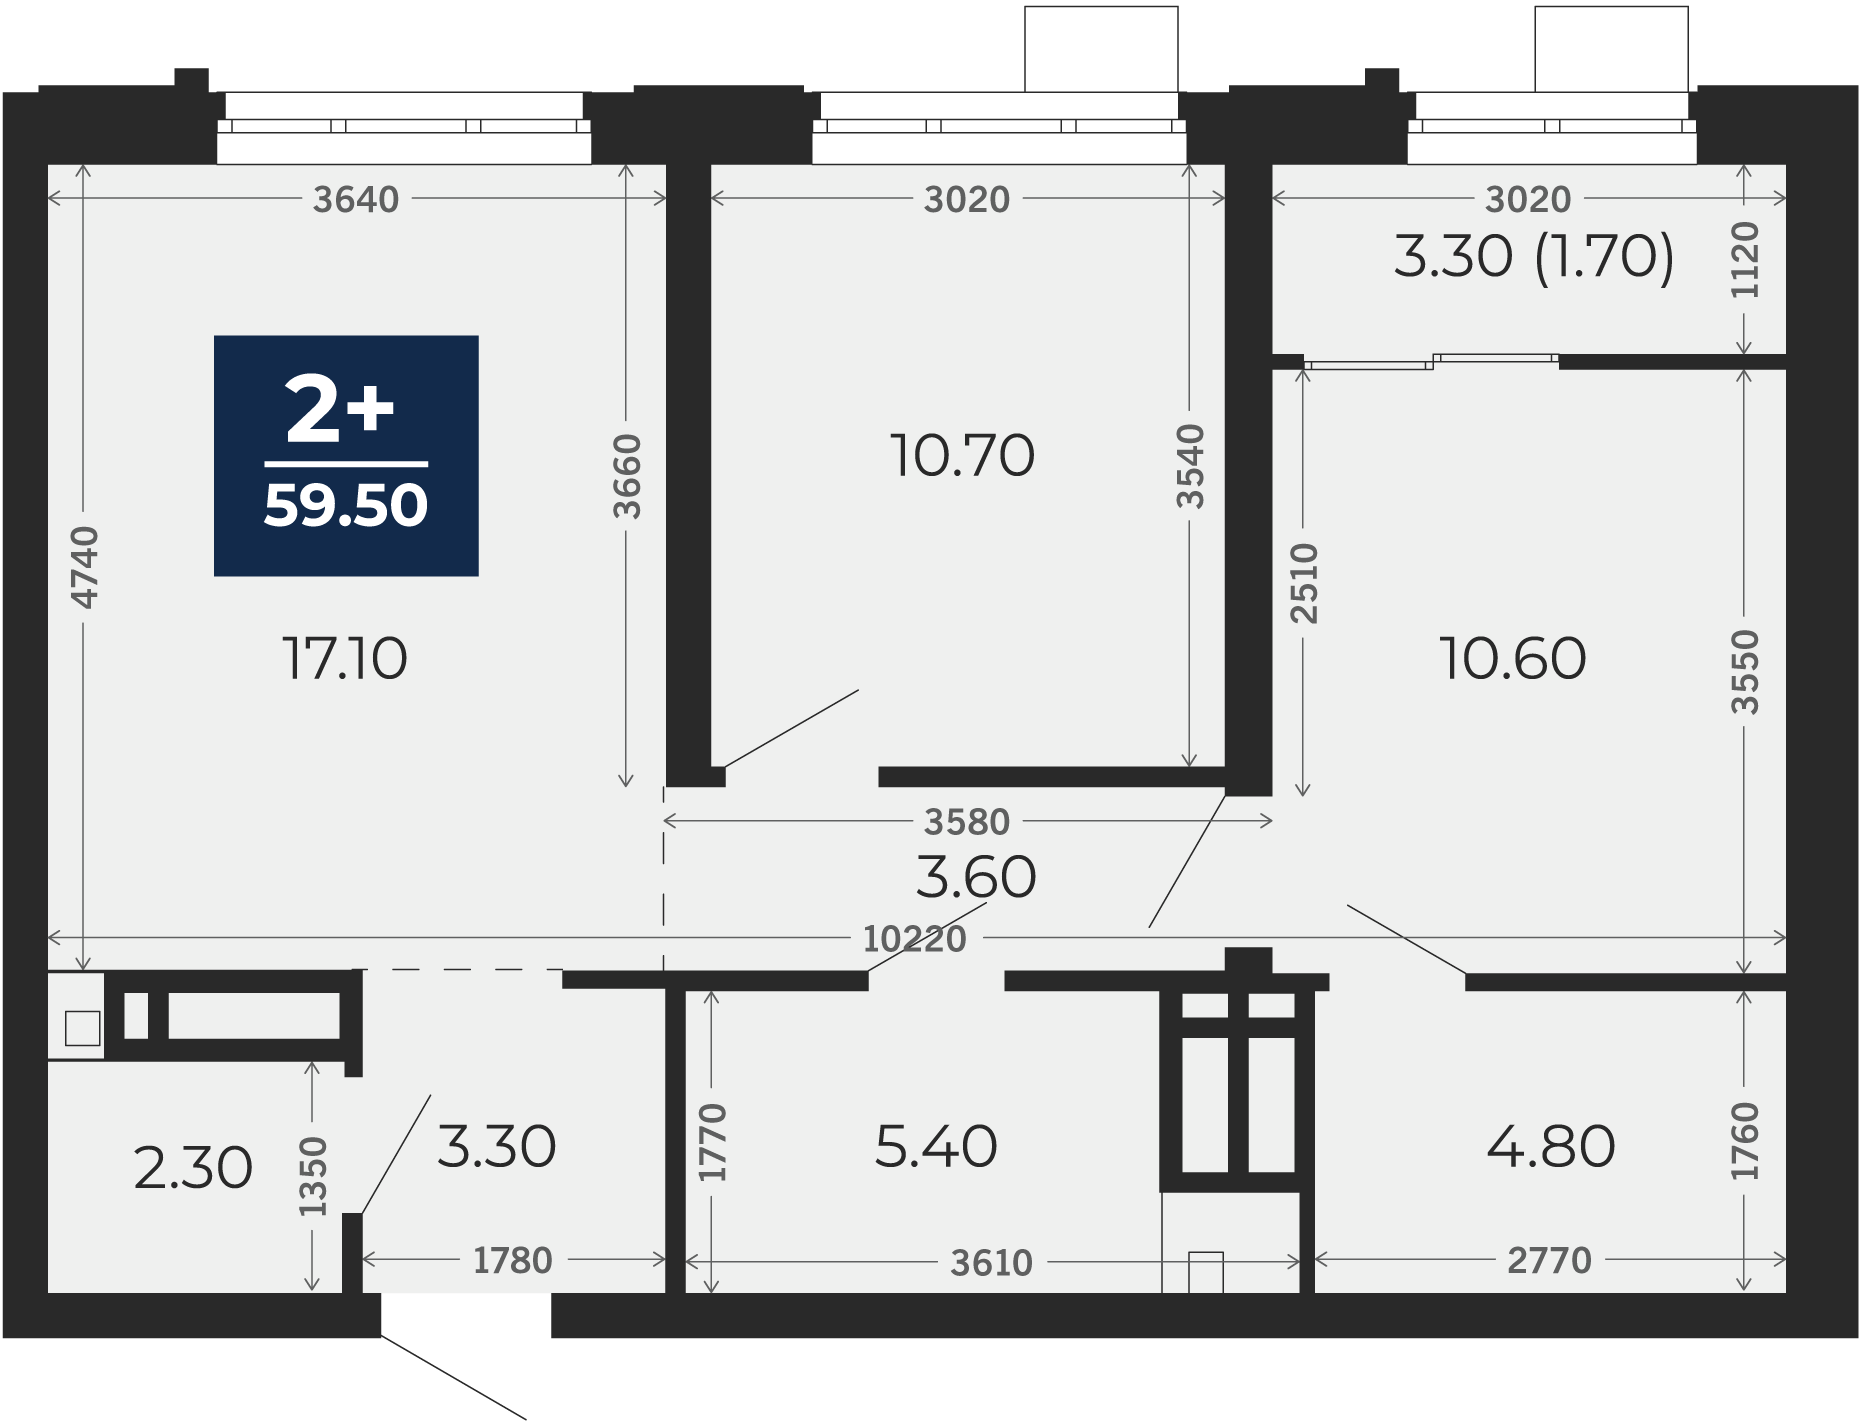 Квартира № 136, 2-комнатная, 59.5 кв. м, 7 этаж